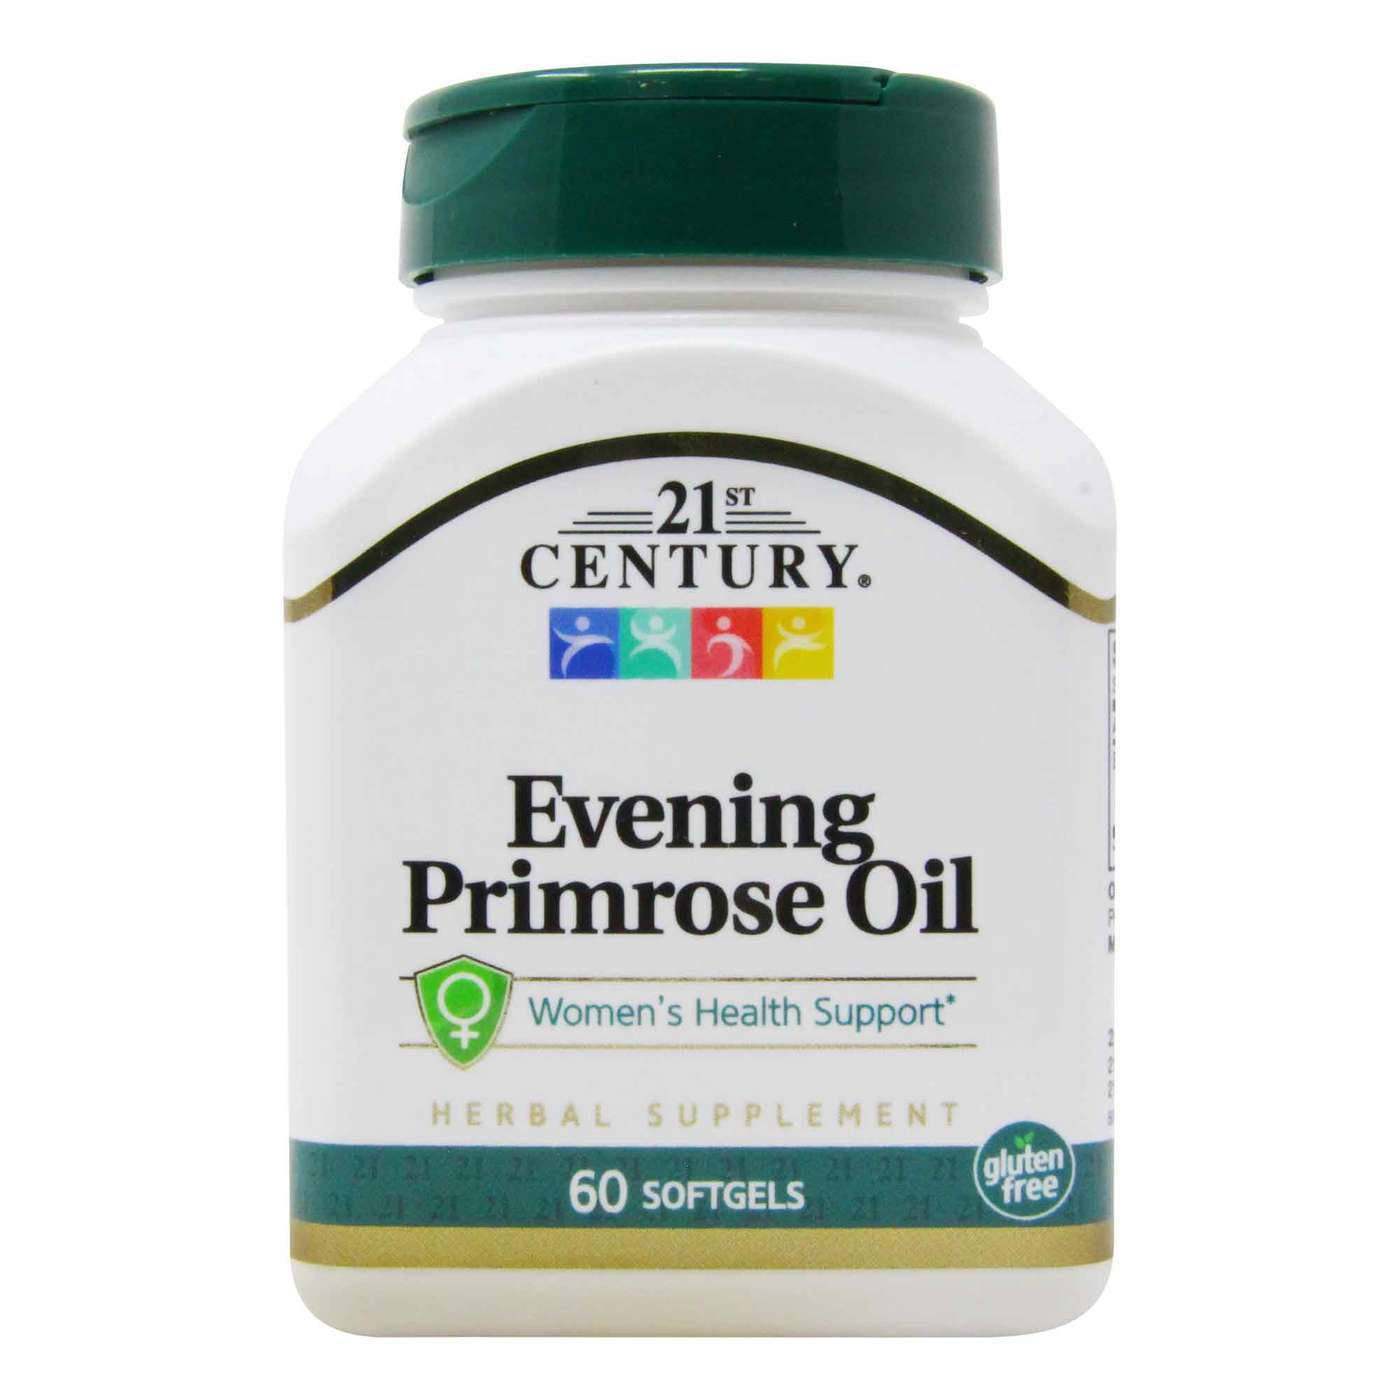 Primrose oil evening Evening primrose